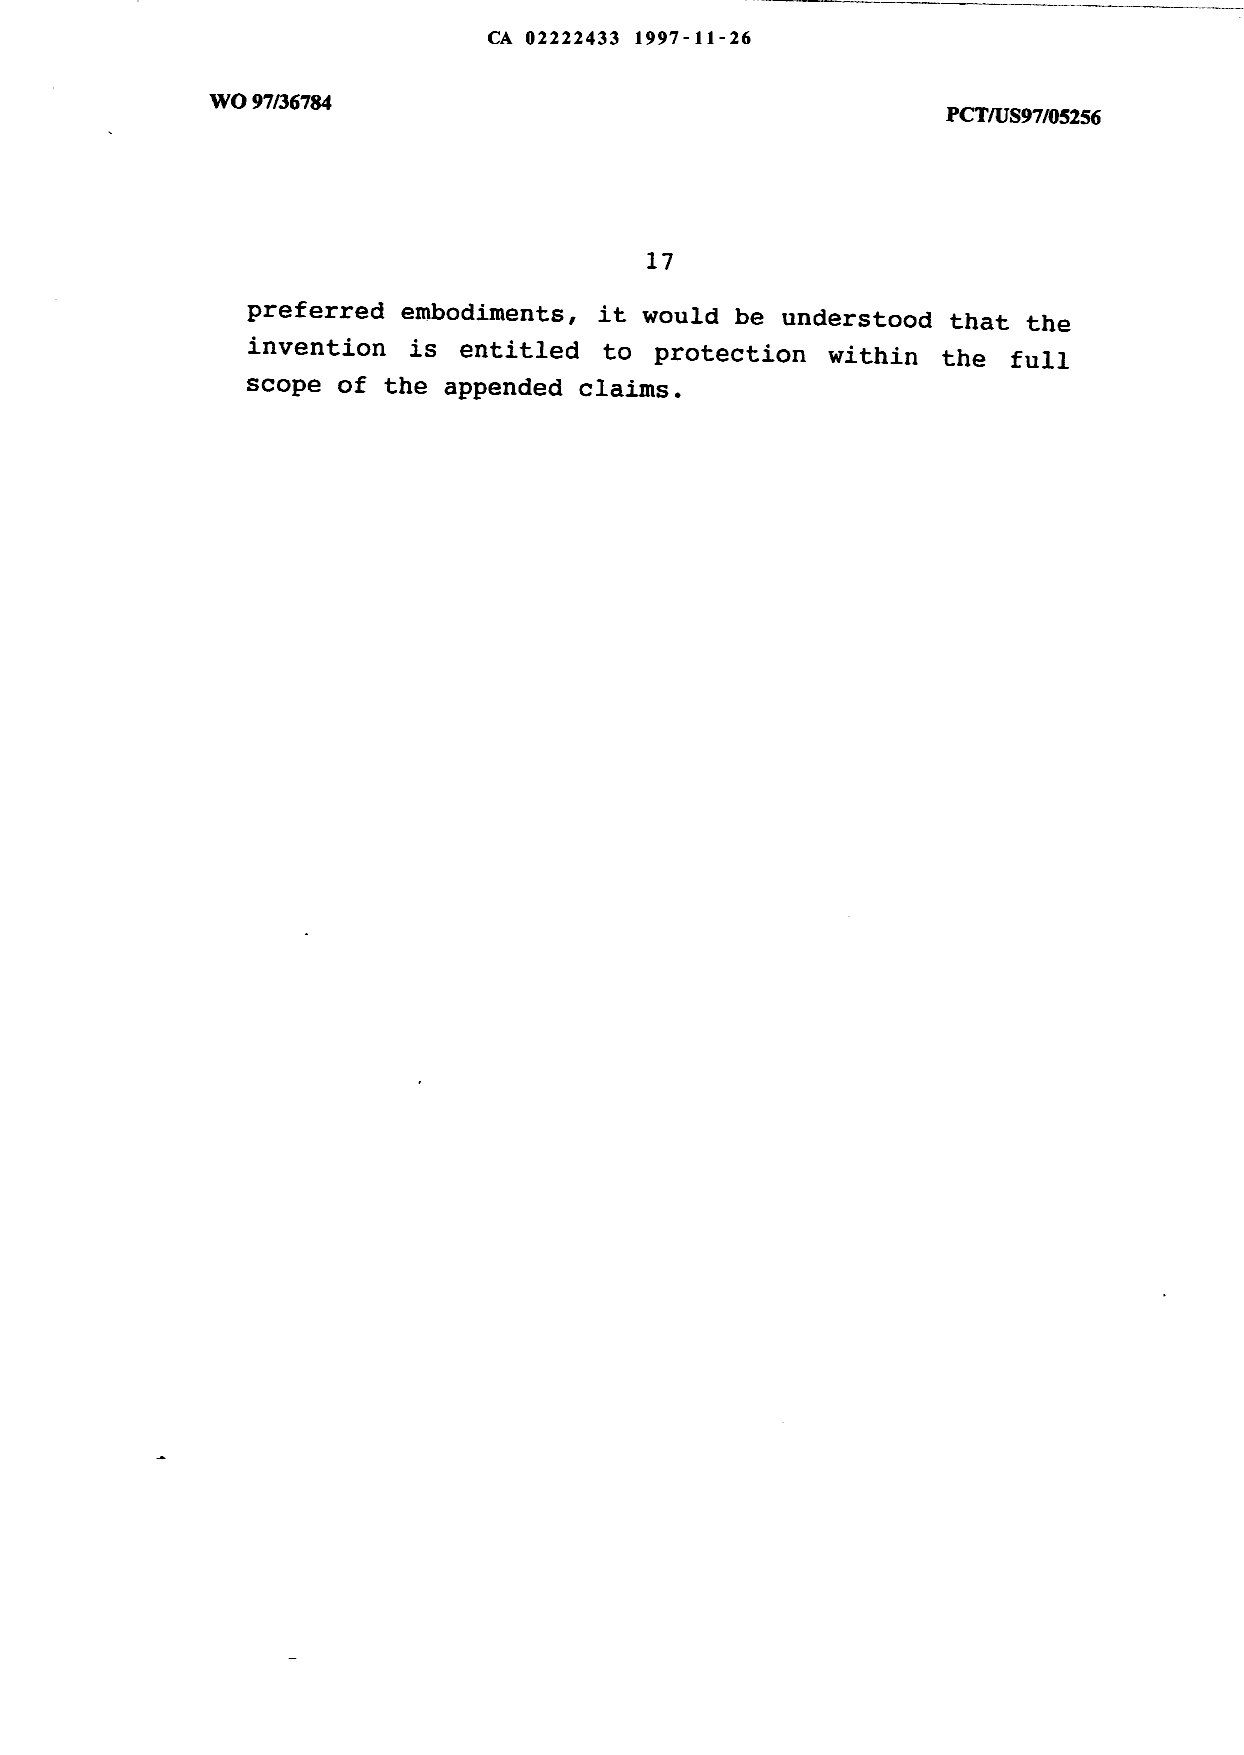 Canadian Patent Document 2222433. Description 19971126. Image 17 of 17